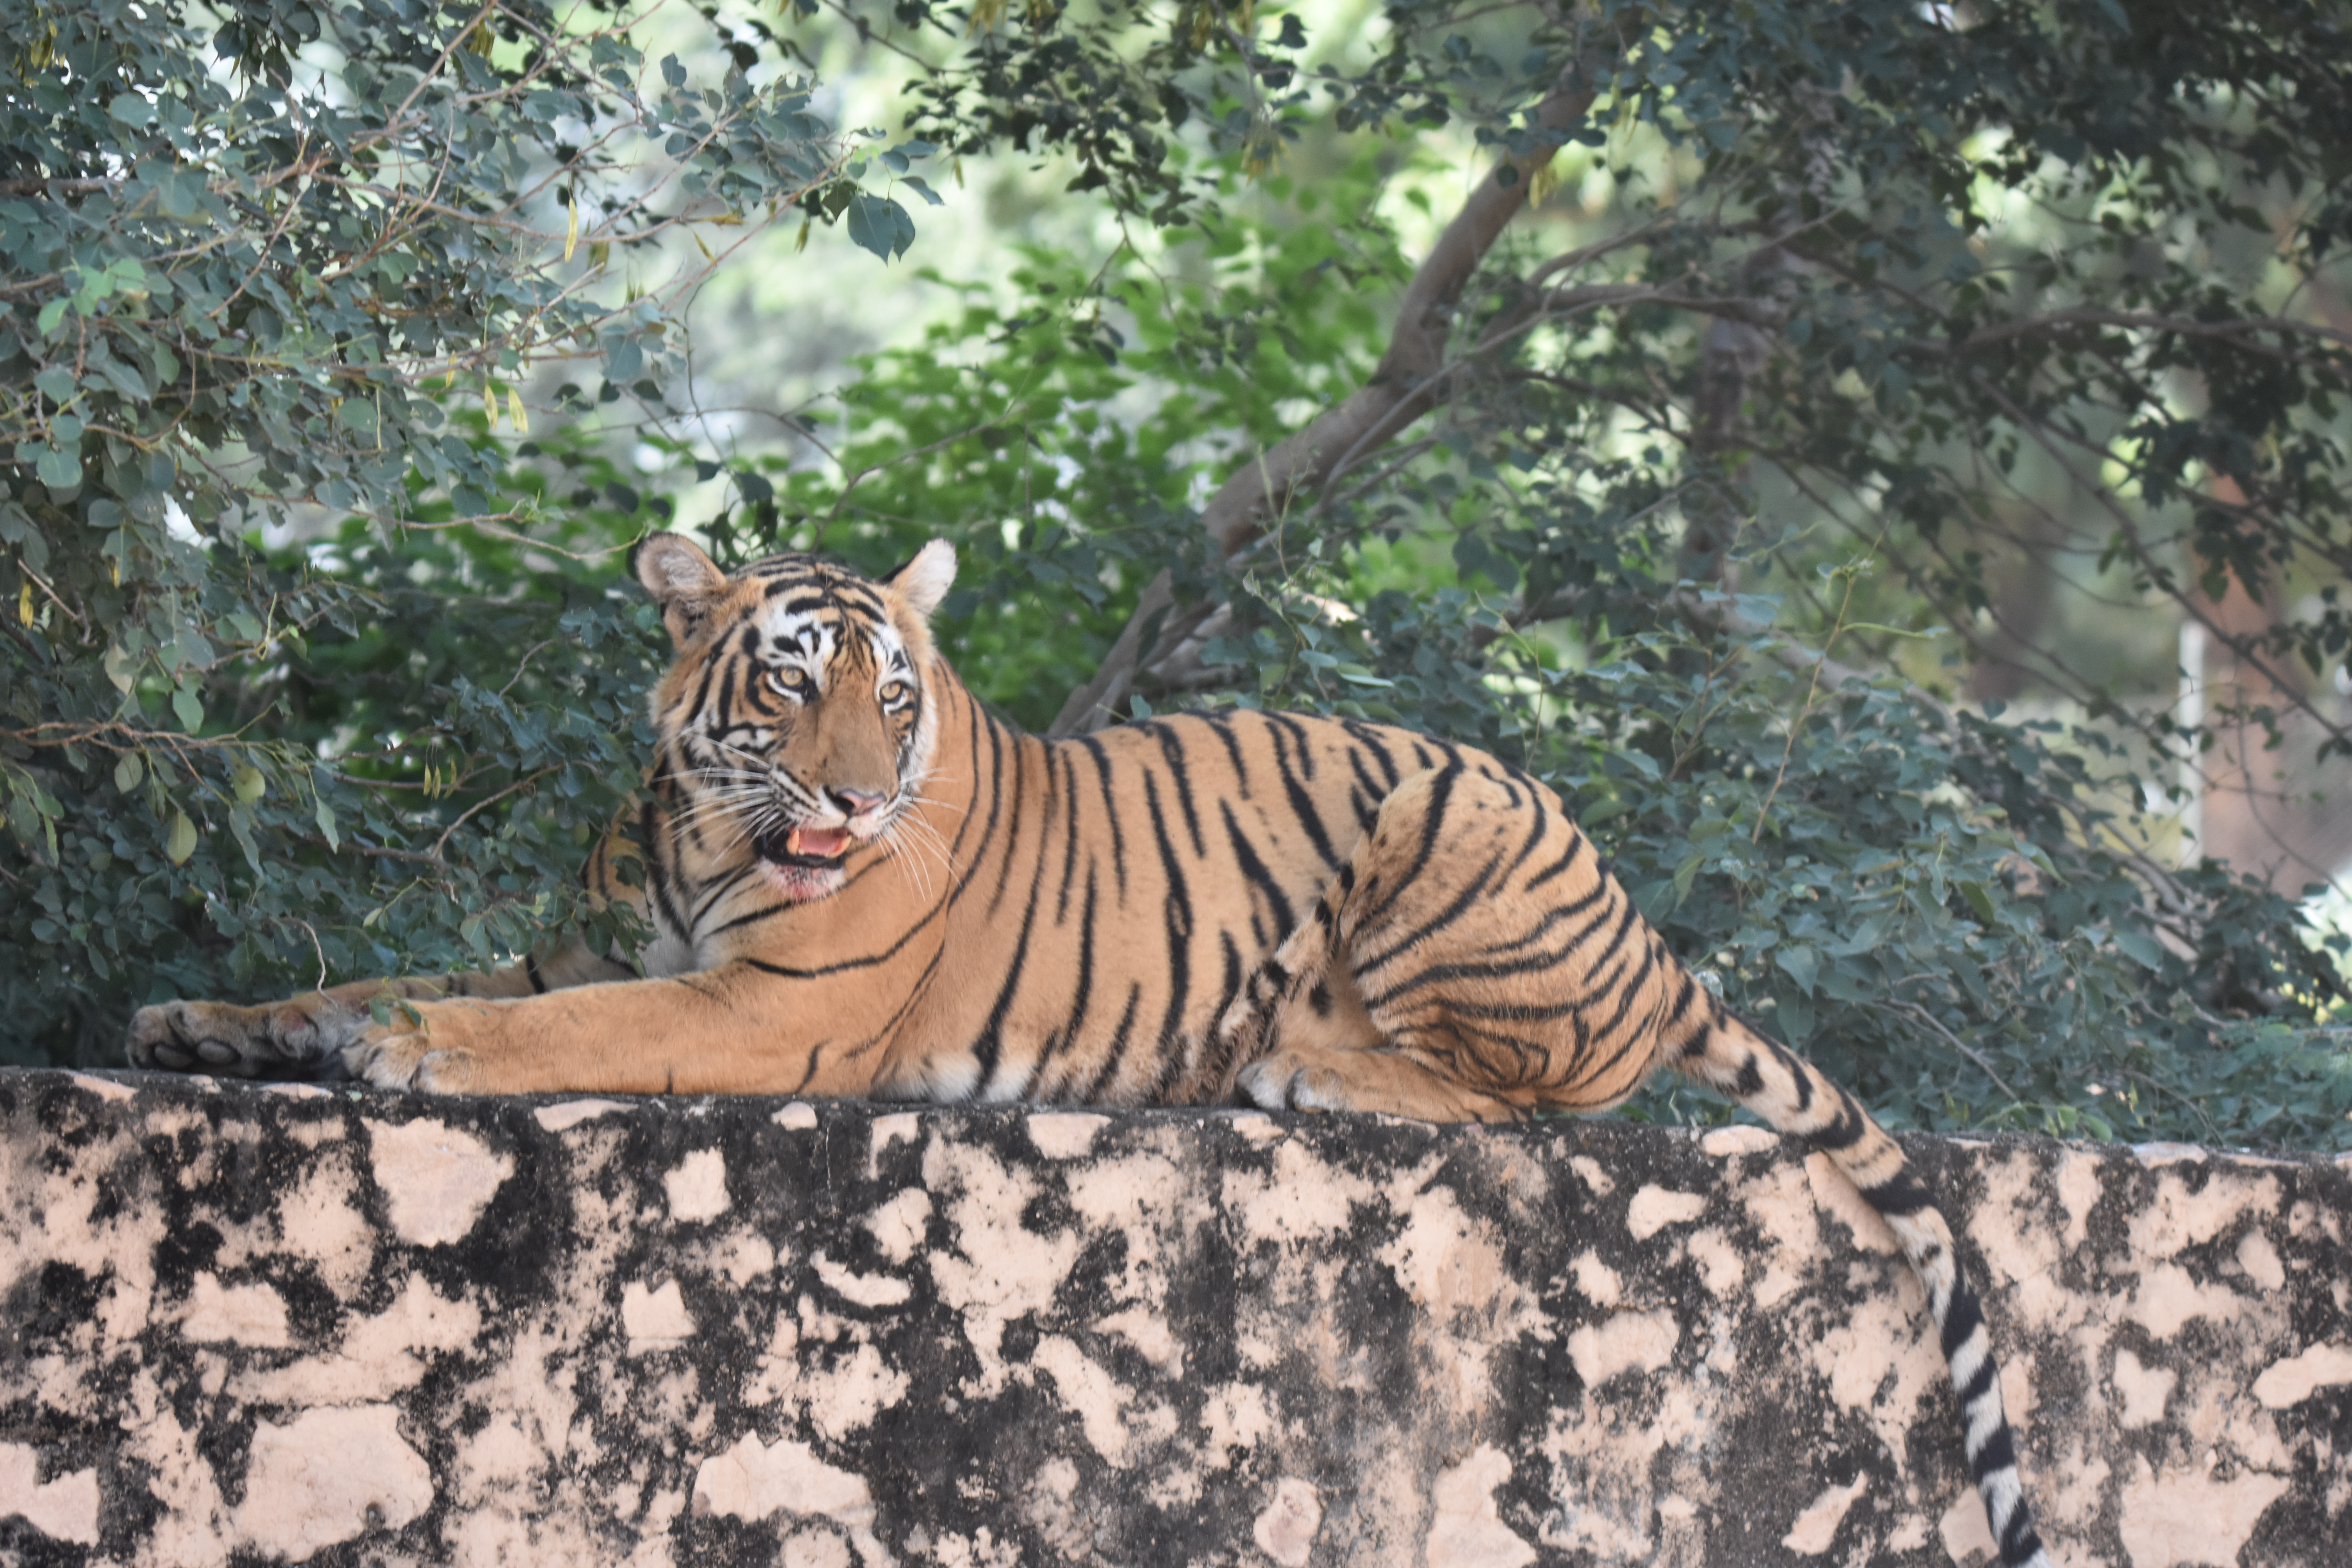 Tiger at Gir National Park